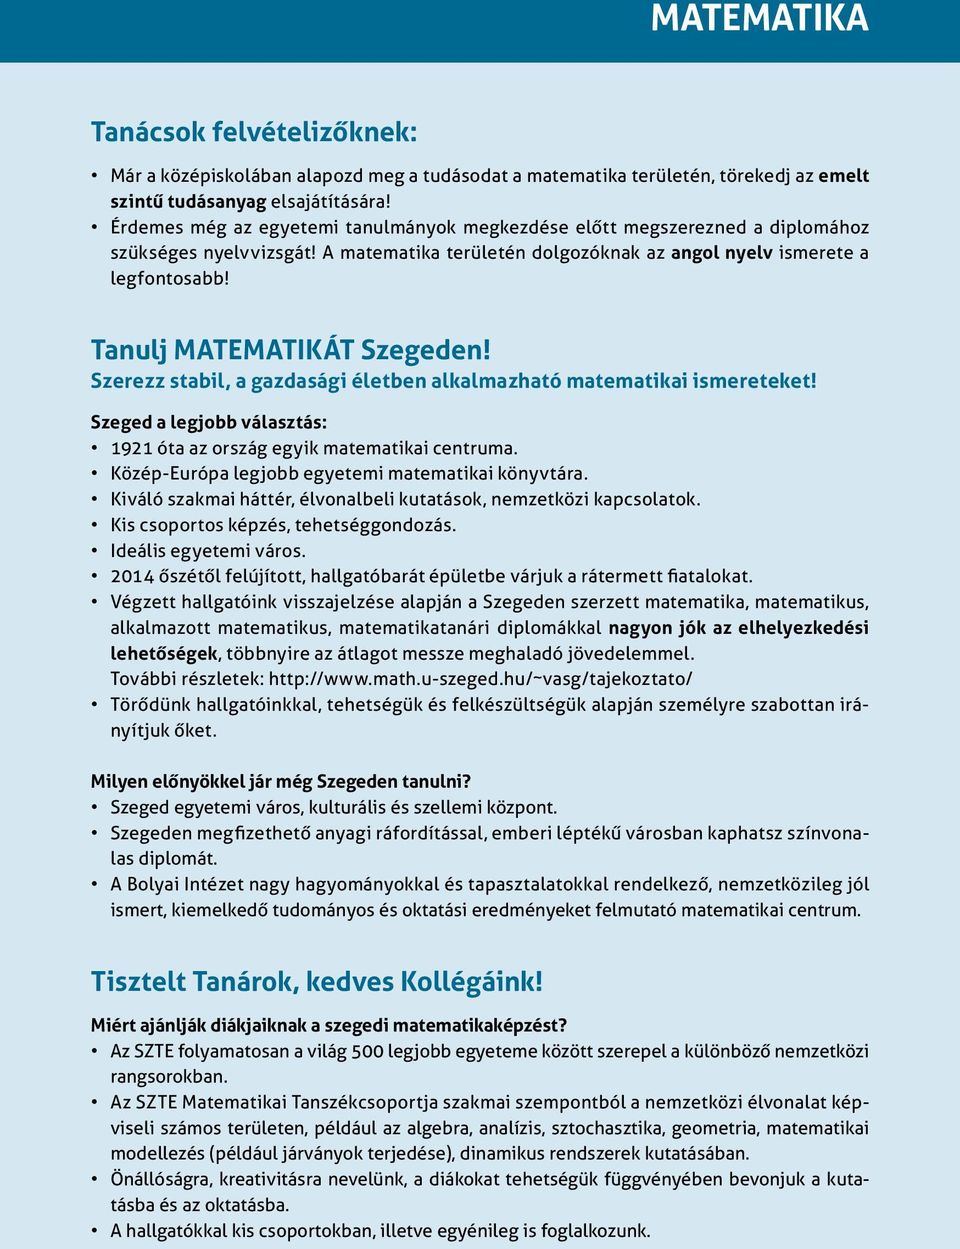 Tanulj MATEMATIKÁT Szegeden! Szerezz stabil, a gazdasági életben alkalmazható matematikai ismereteket! Szeged a legjobb választás: 1921 óta az ország egyik matematikai centruma.